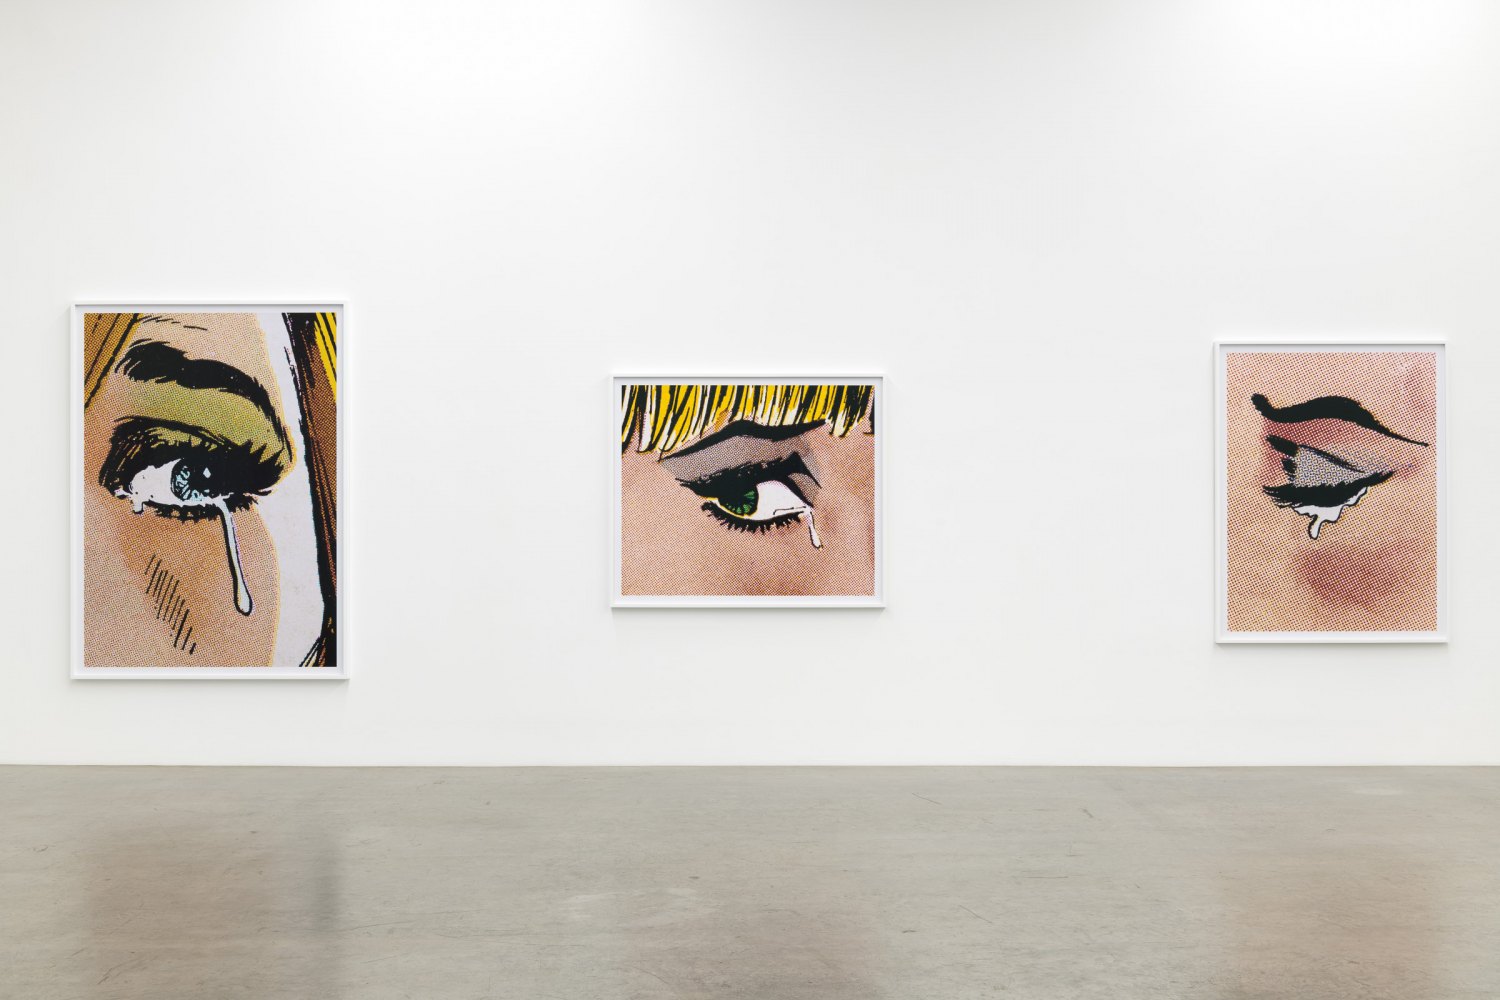 Installation View, Anne Collier, Galerie Neu, 2019